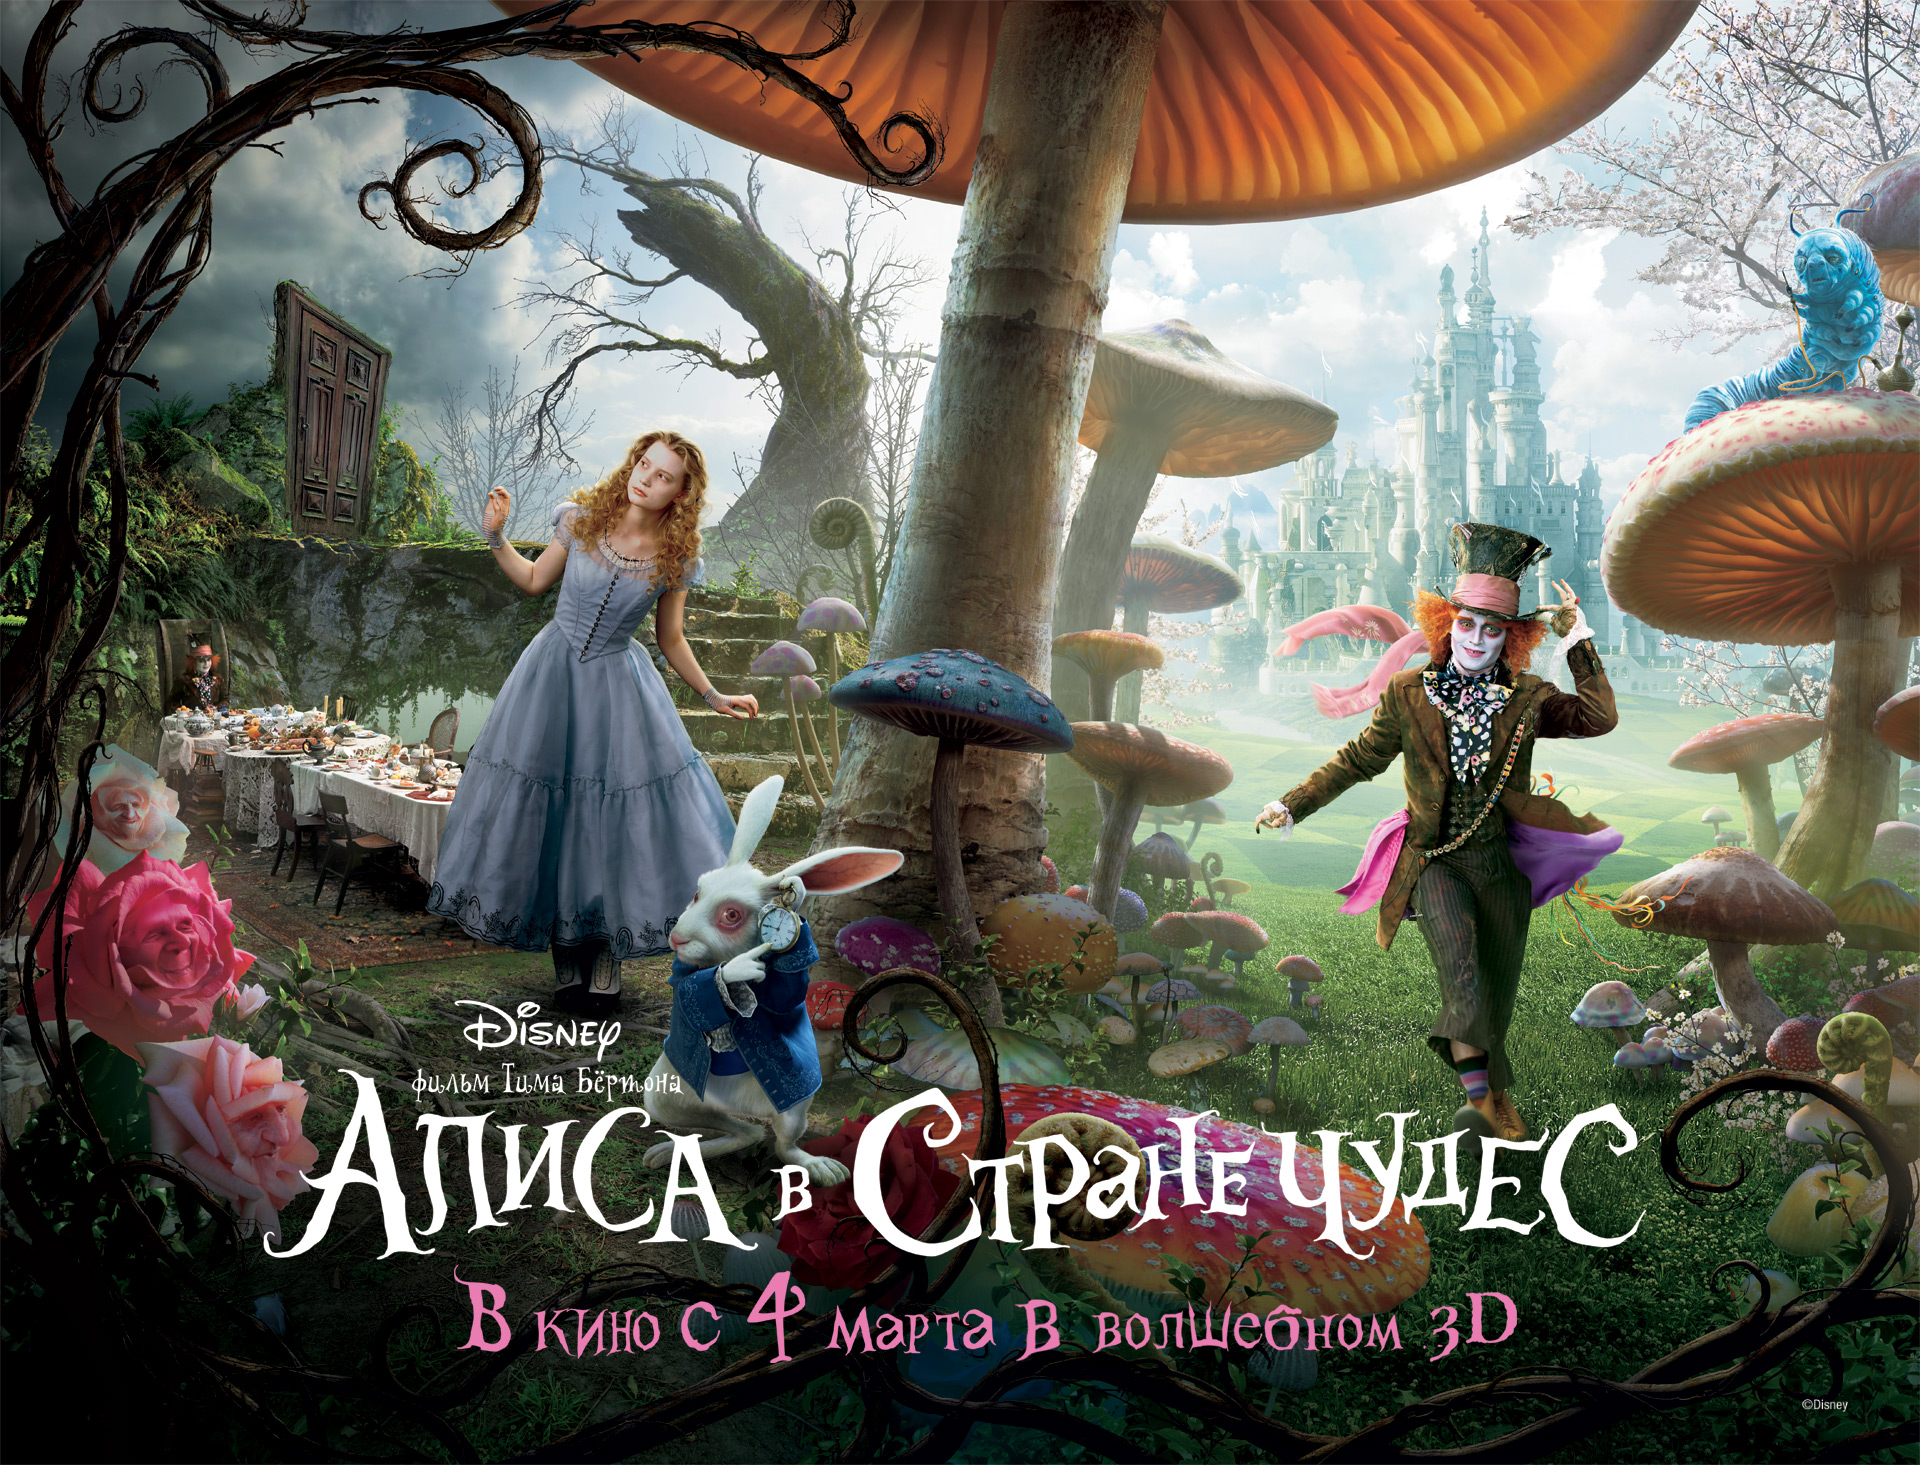 Постеры к фильмам - "Алиса в стране чудес"